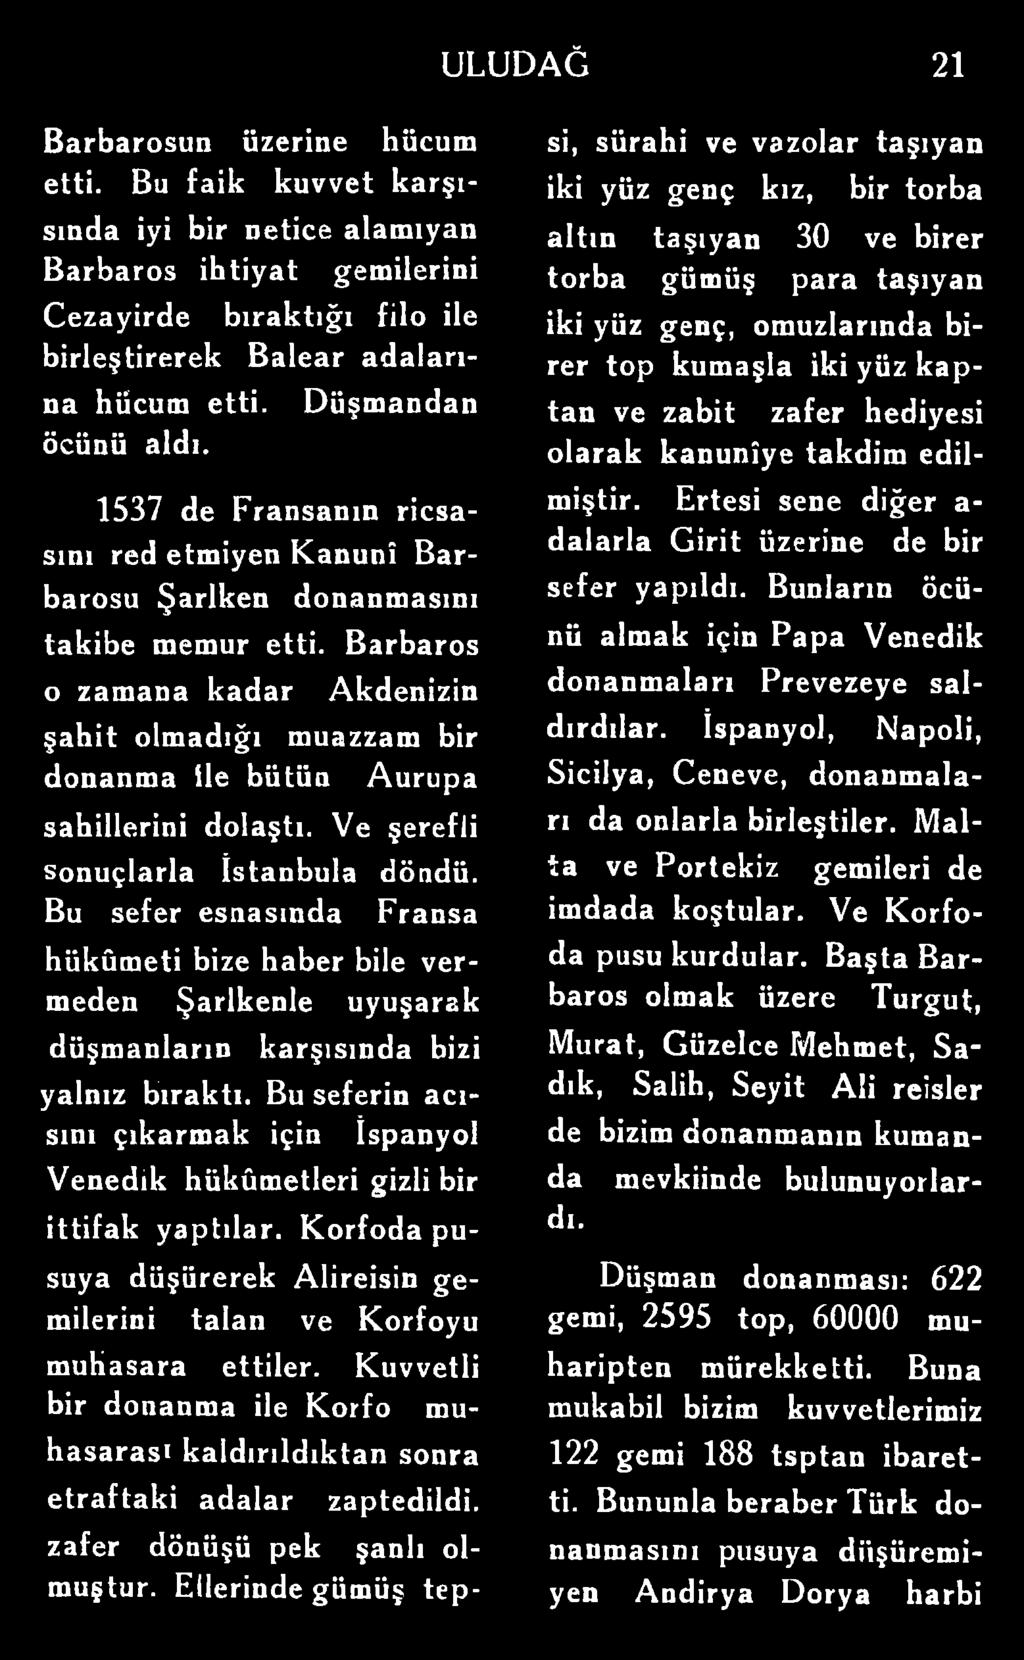 Barbaros o zamana kadar Akdenizin şahit olmadığı muazzam bir donanma ile bütün Aurupa sahillerini dolaştı. Ve şerefli sonuçlarla İstanbula döndü.